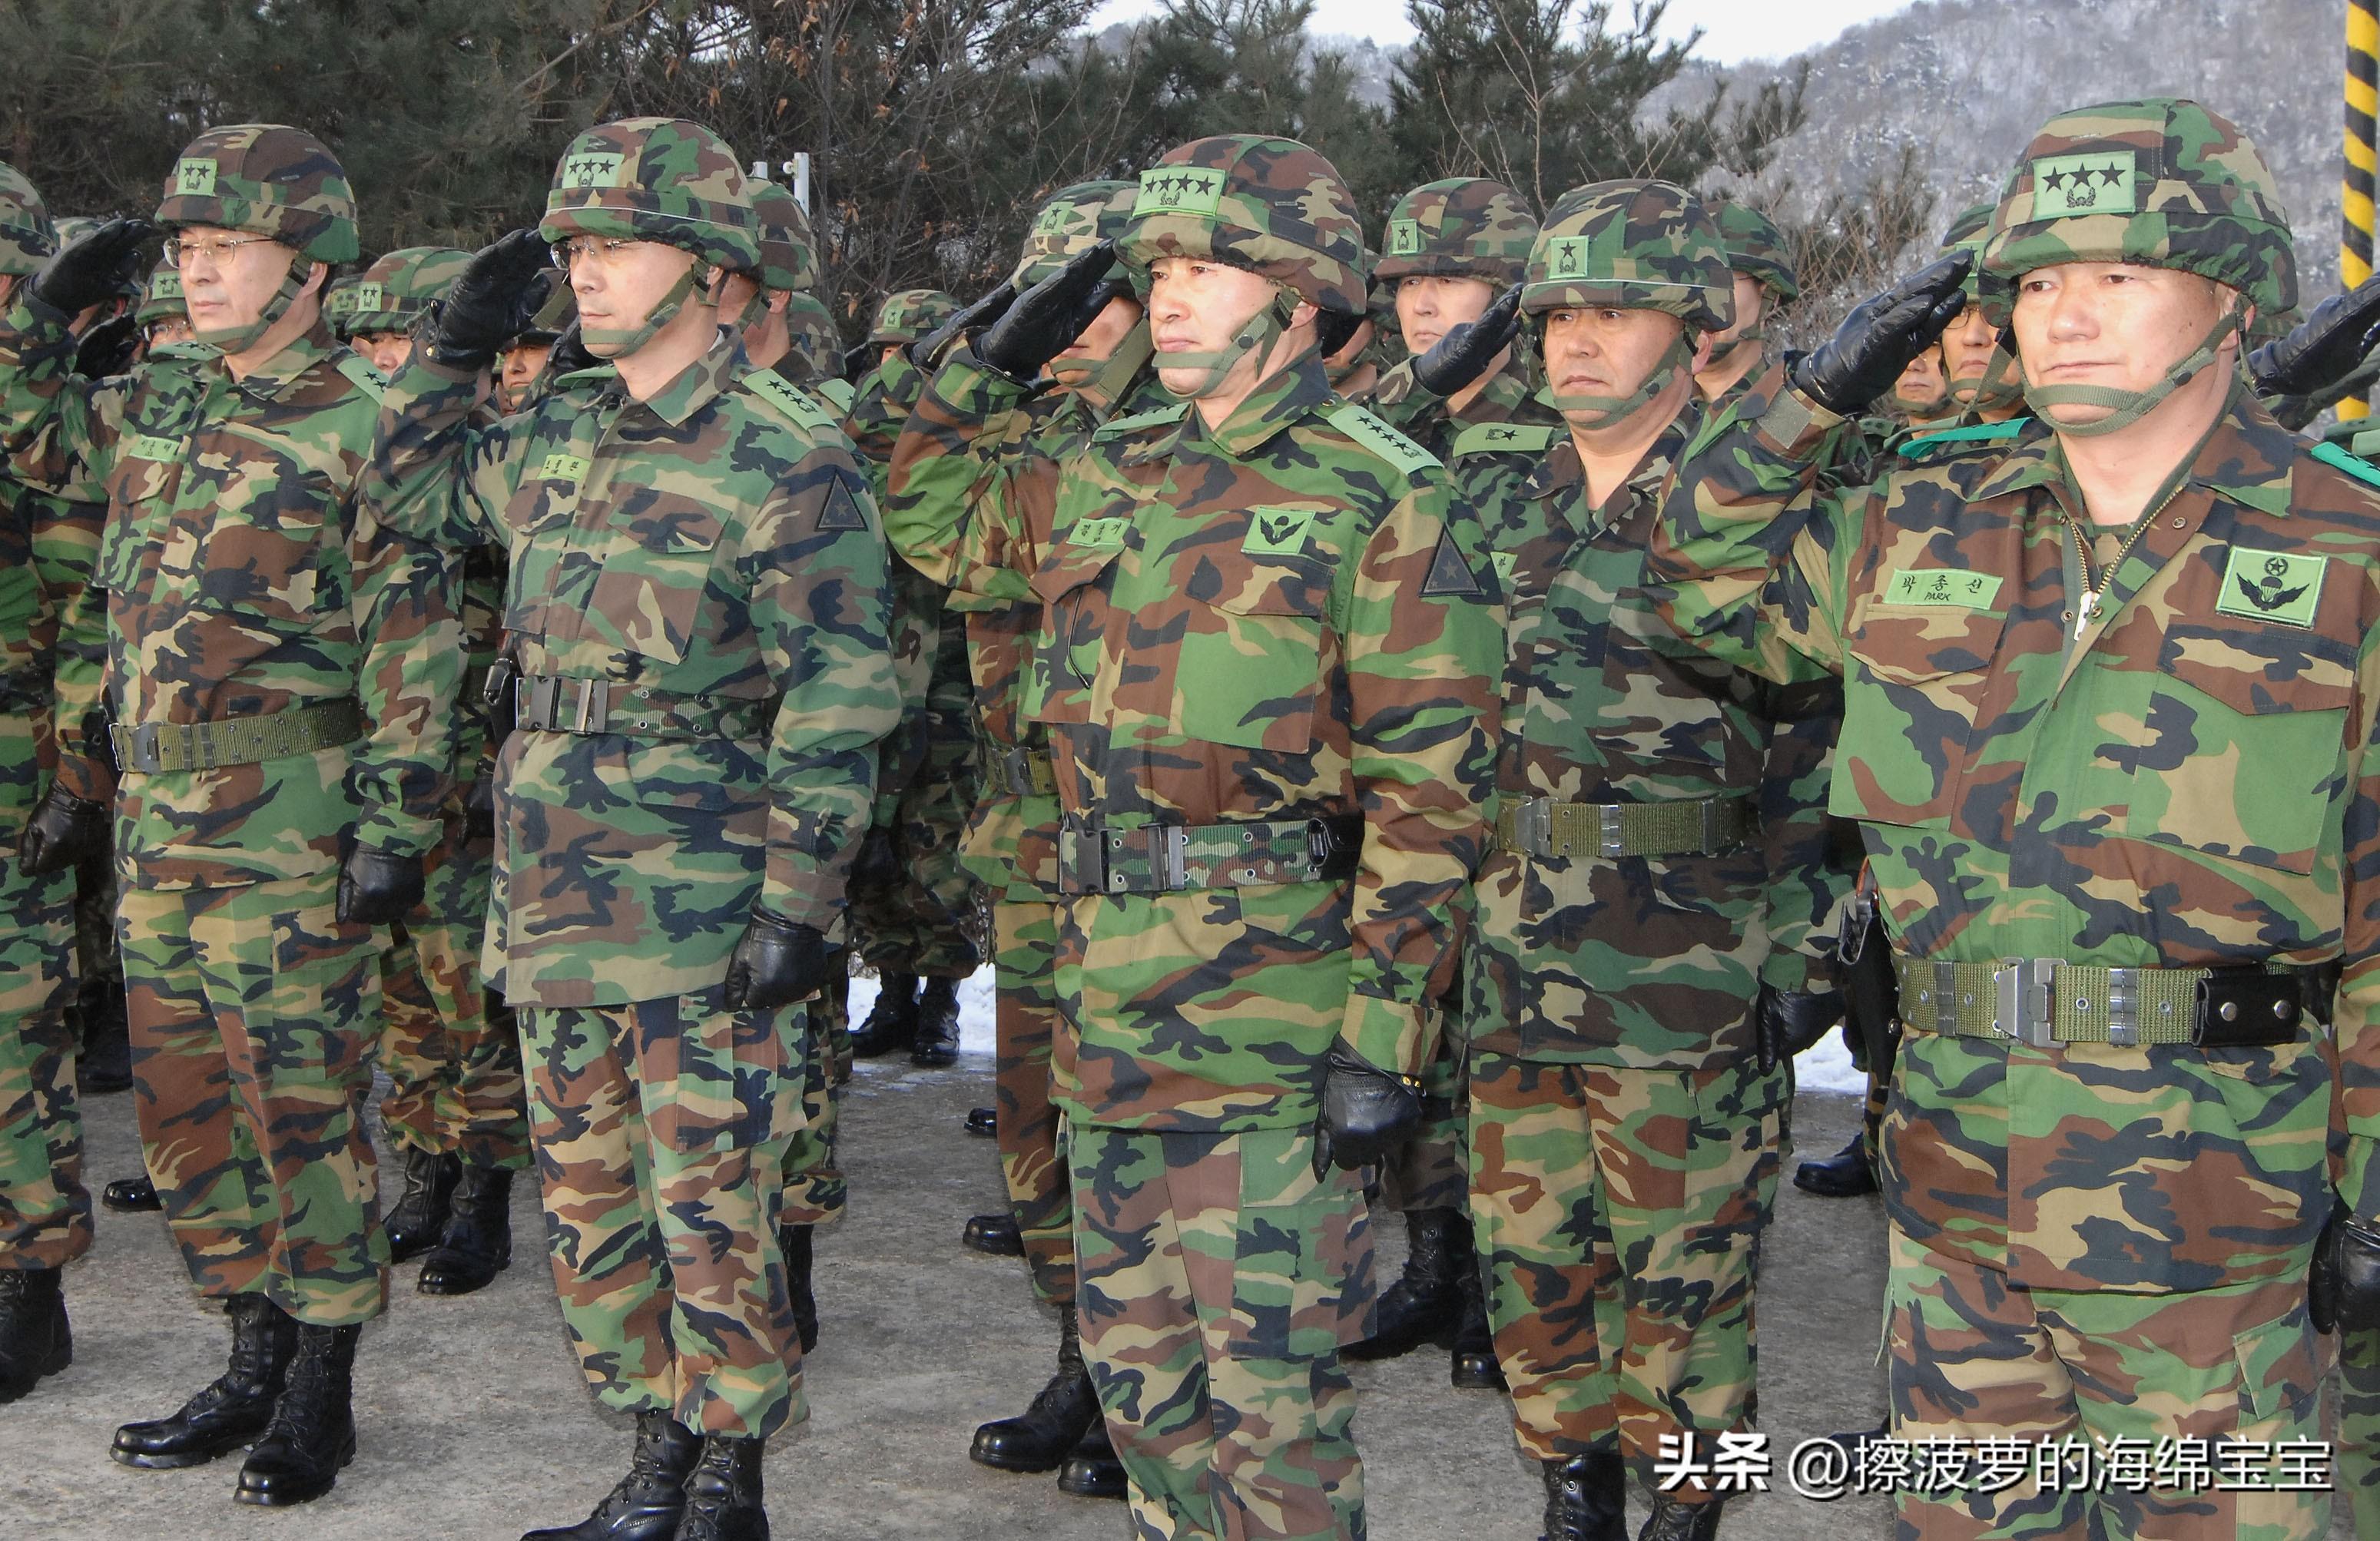 韩国军人见面为什么有说团结,有说忠诚,还有说必胜的?